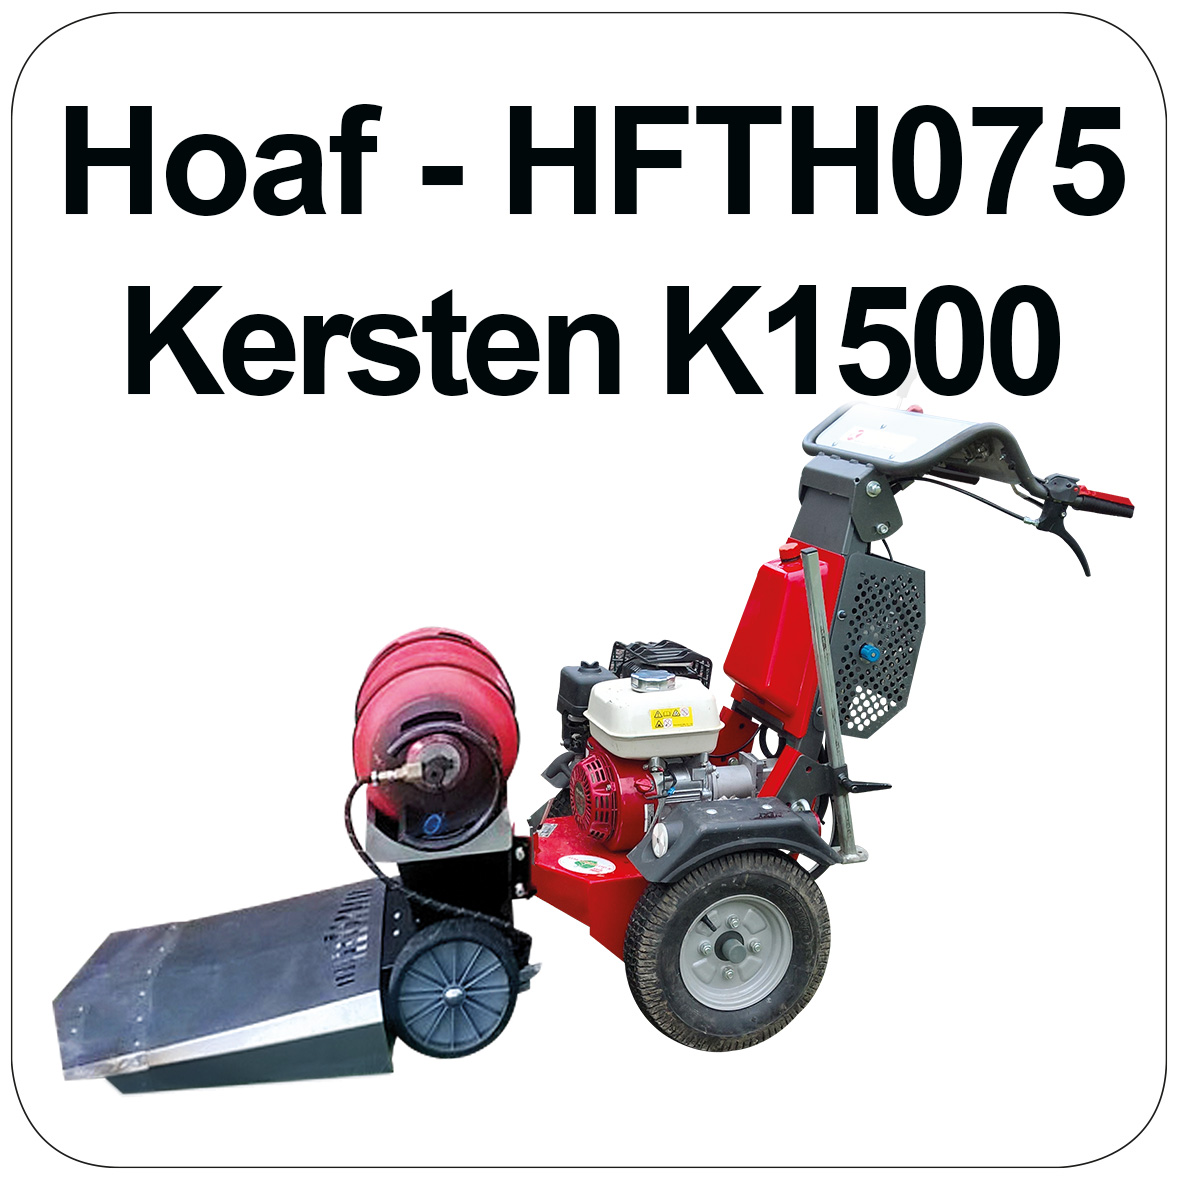 HOAF Kersten-K1500 Pro Weed Burner - HFTH075-K1500